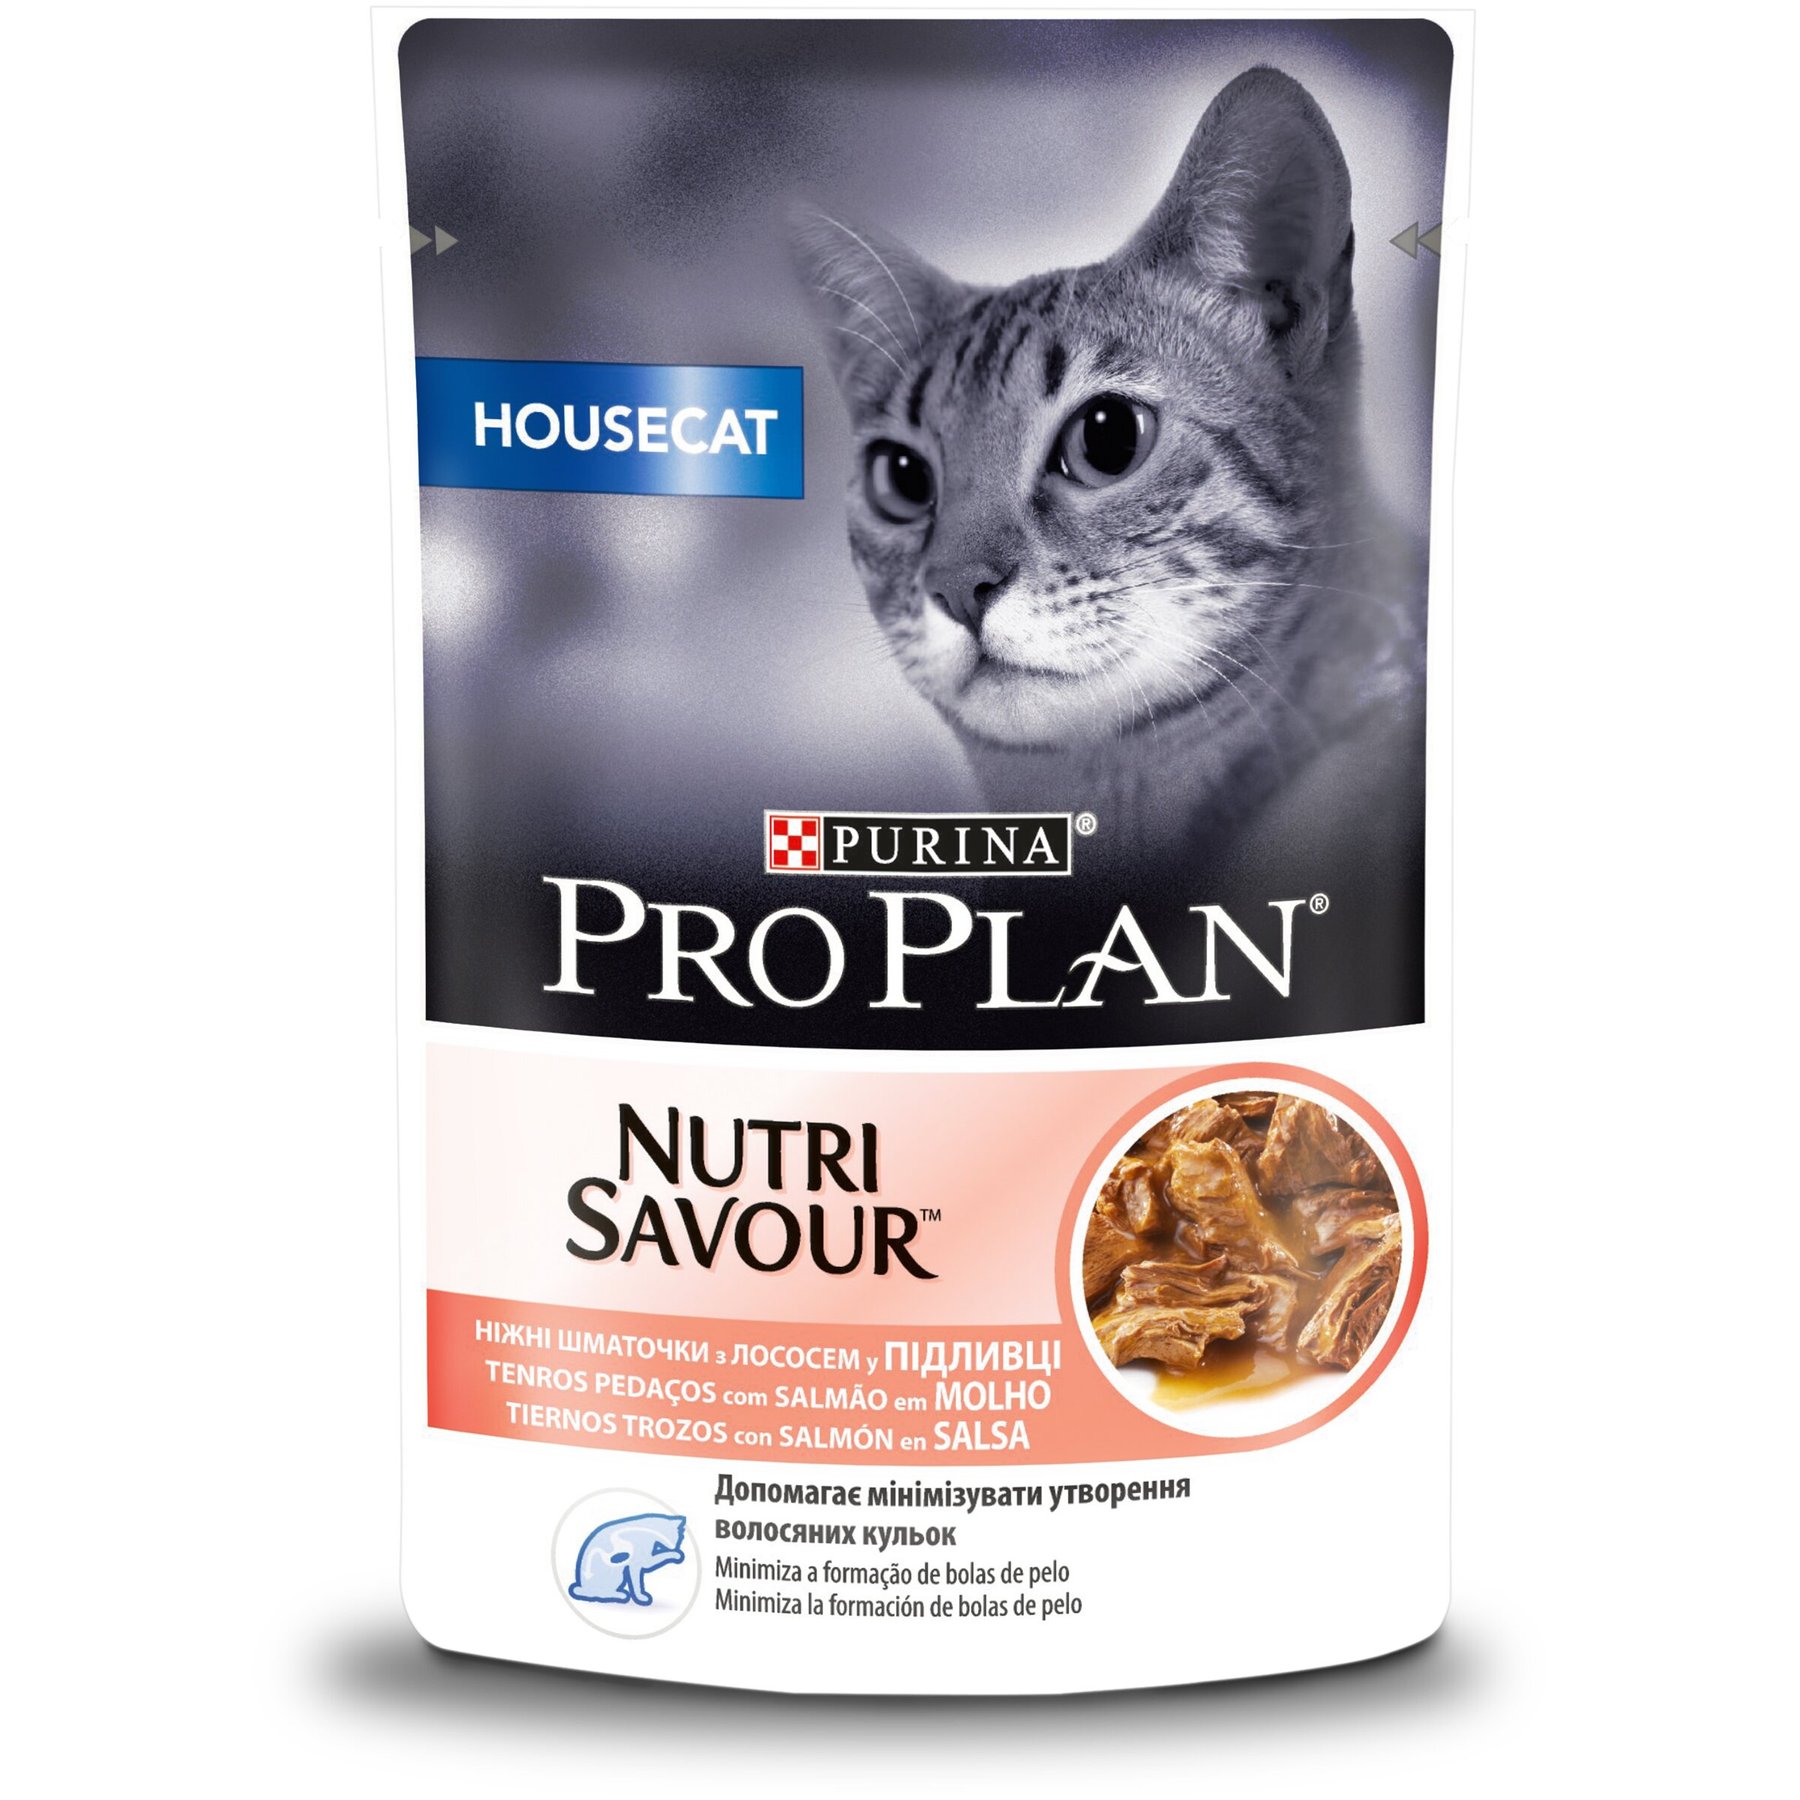 ProPlan Housecat Nutrisavour - Влажный корм для кошек живущих в помещении, с лососем 85 гр